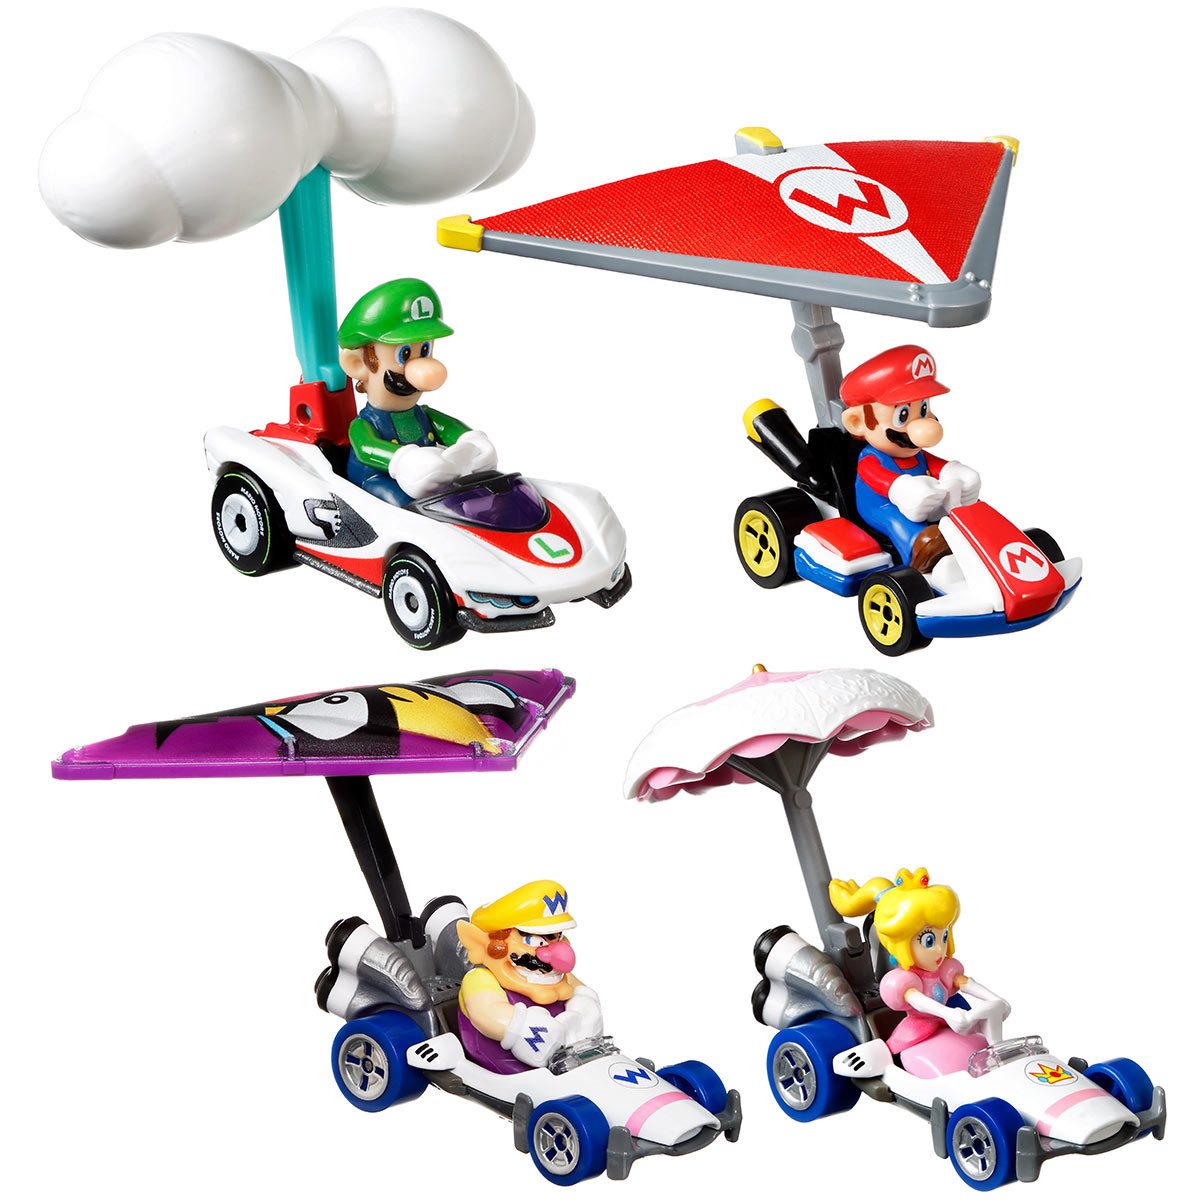 Hot Wheels® Mario Kart™ Vehicle 4-Pack, Set of 4 Fan-Favorite